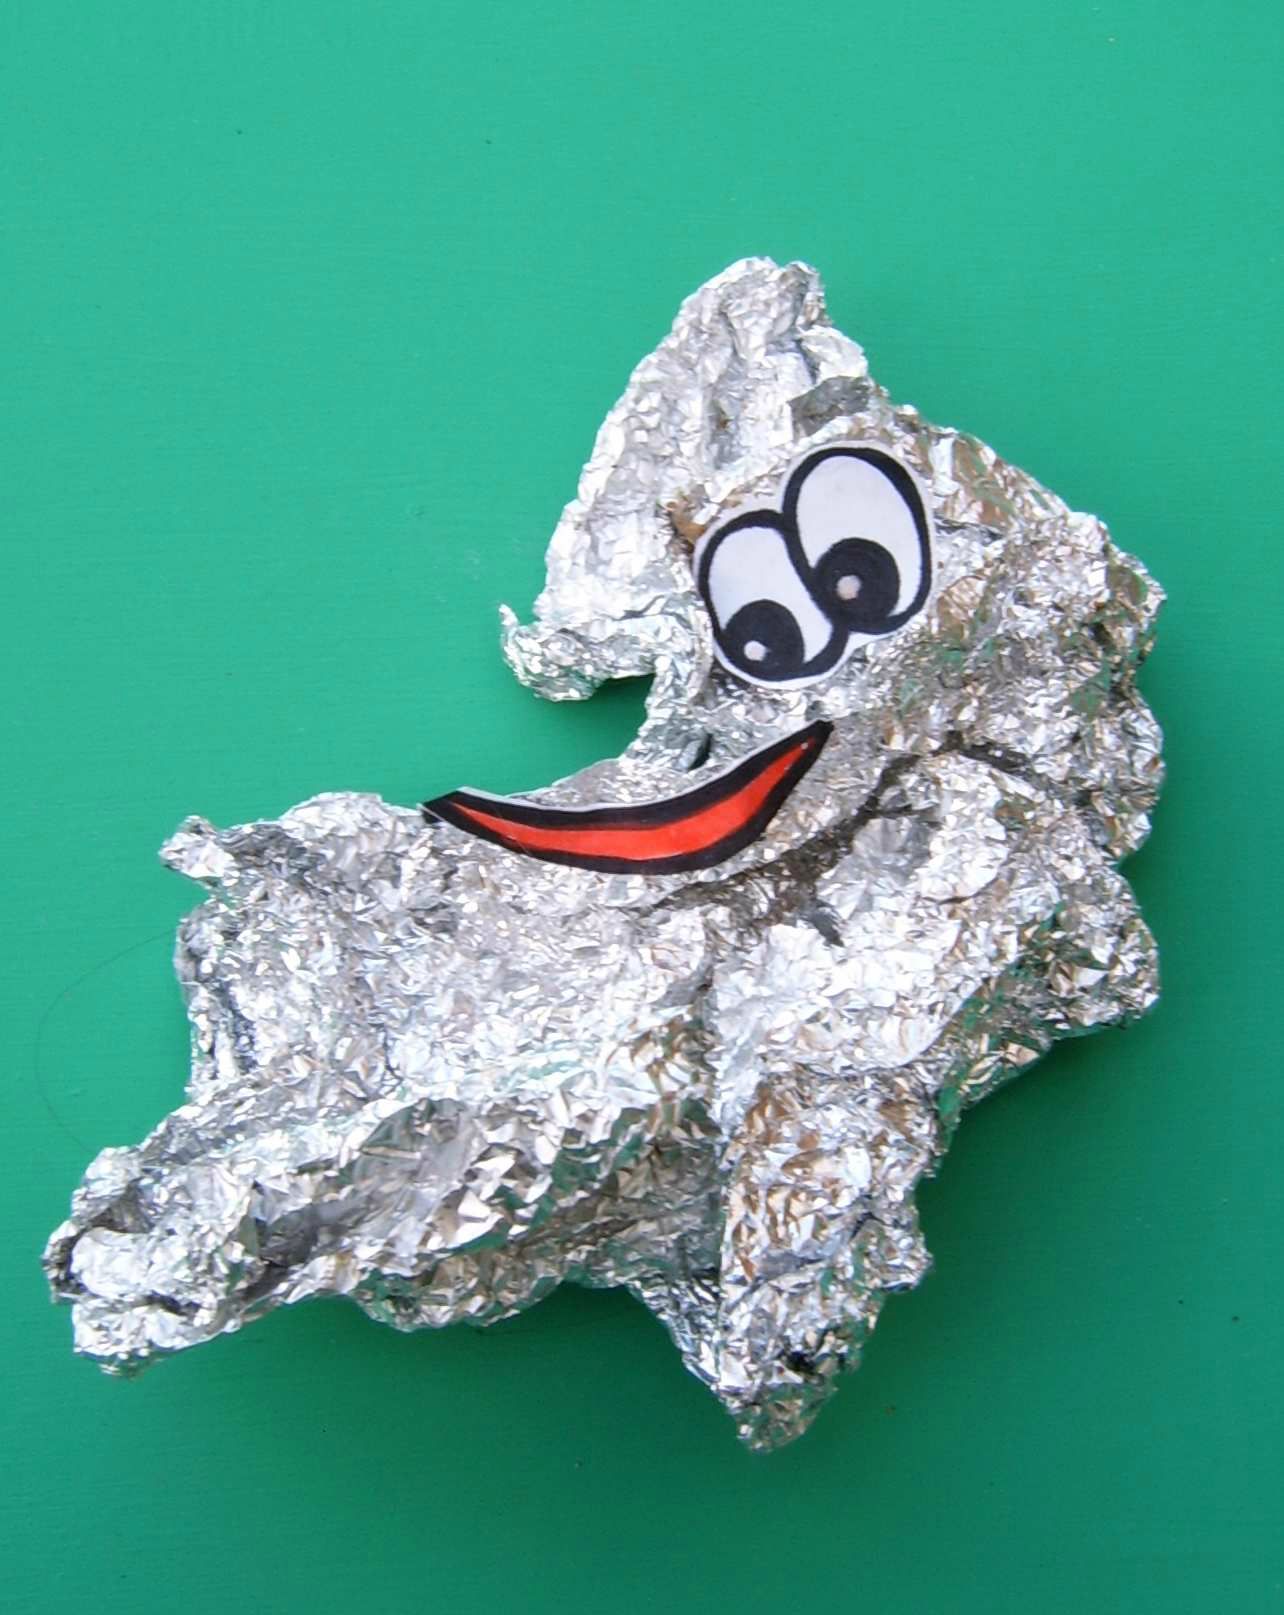 Déchet métal Morceau papier aluminium Récupération - Waste metal aluminium